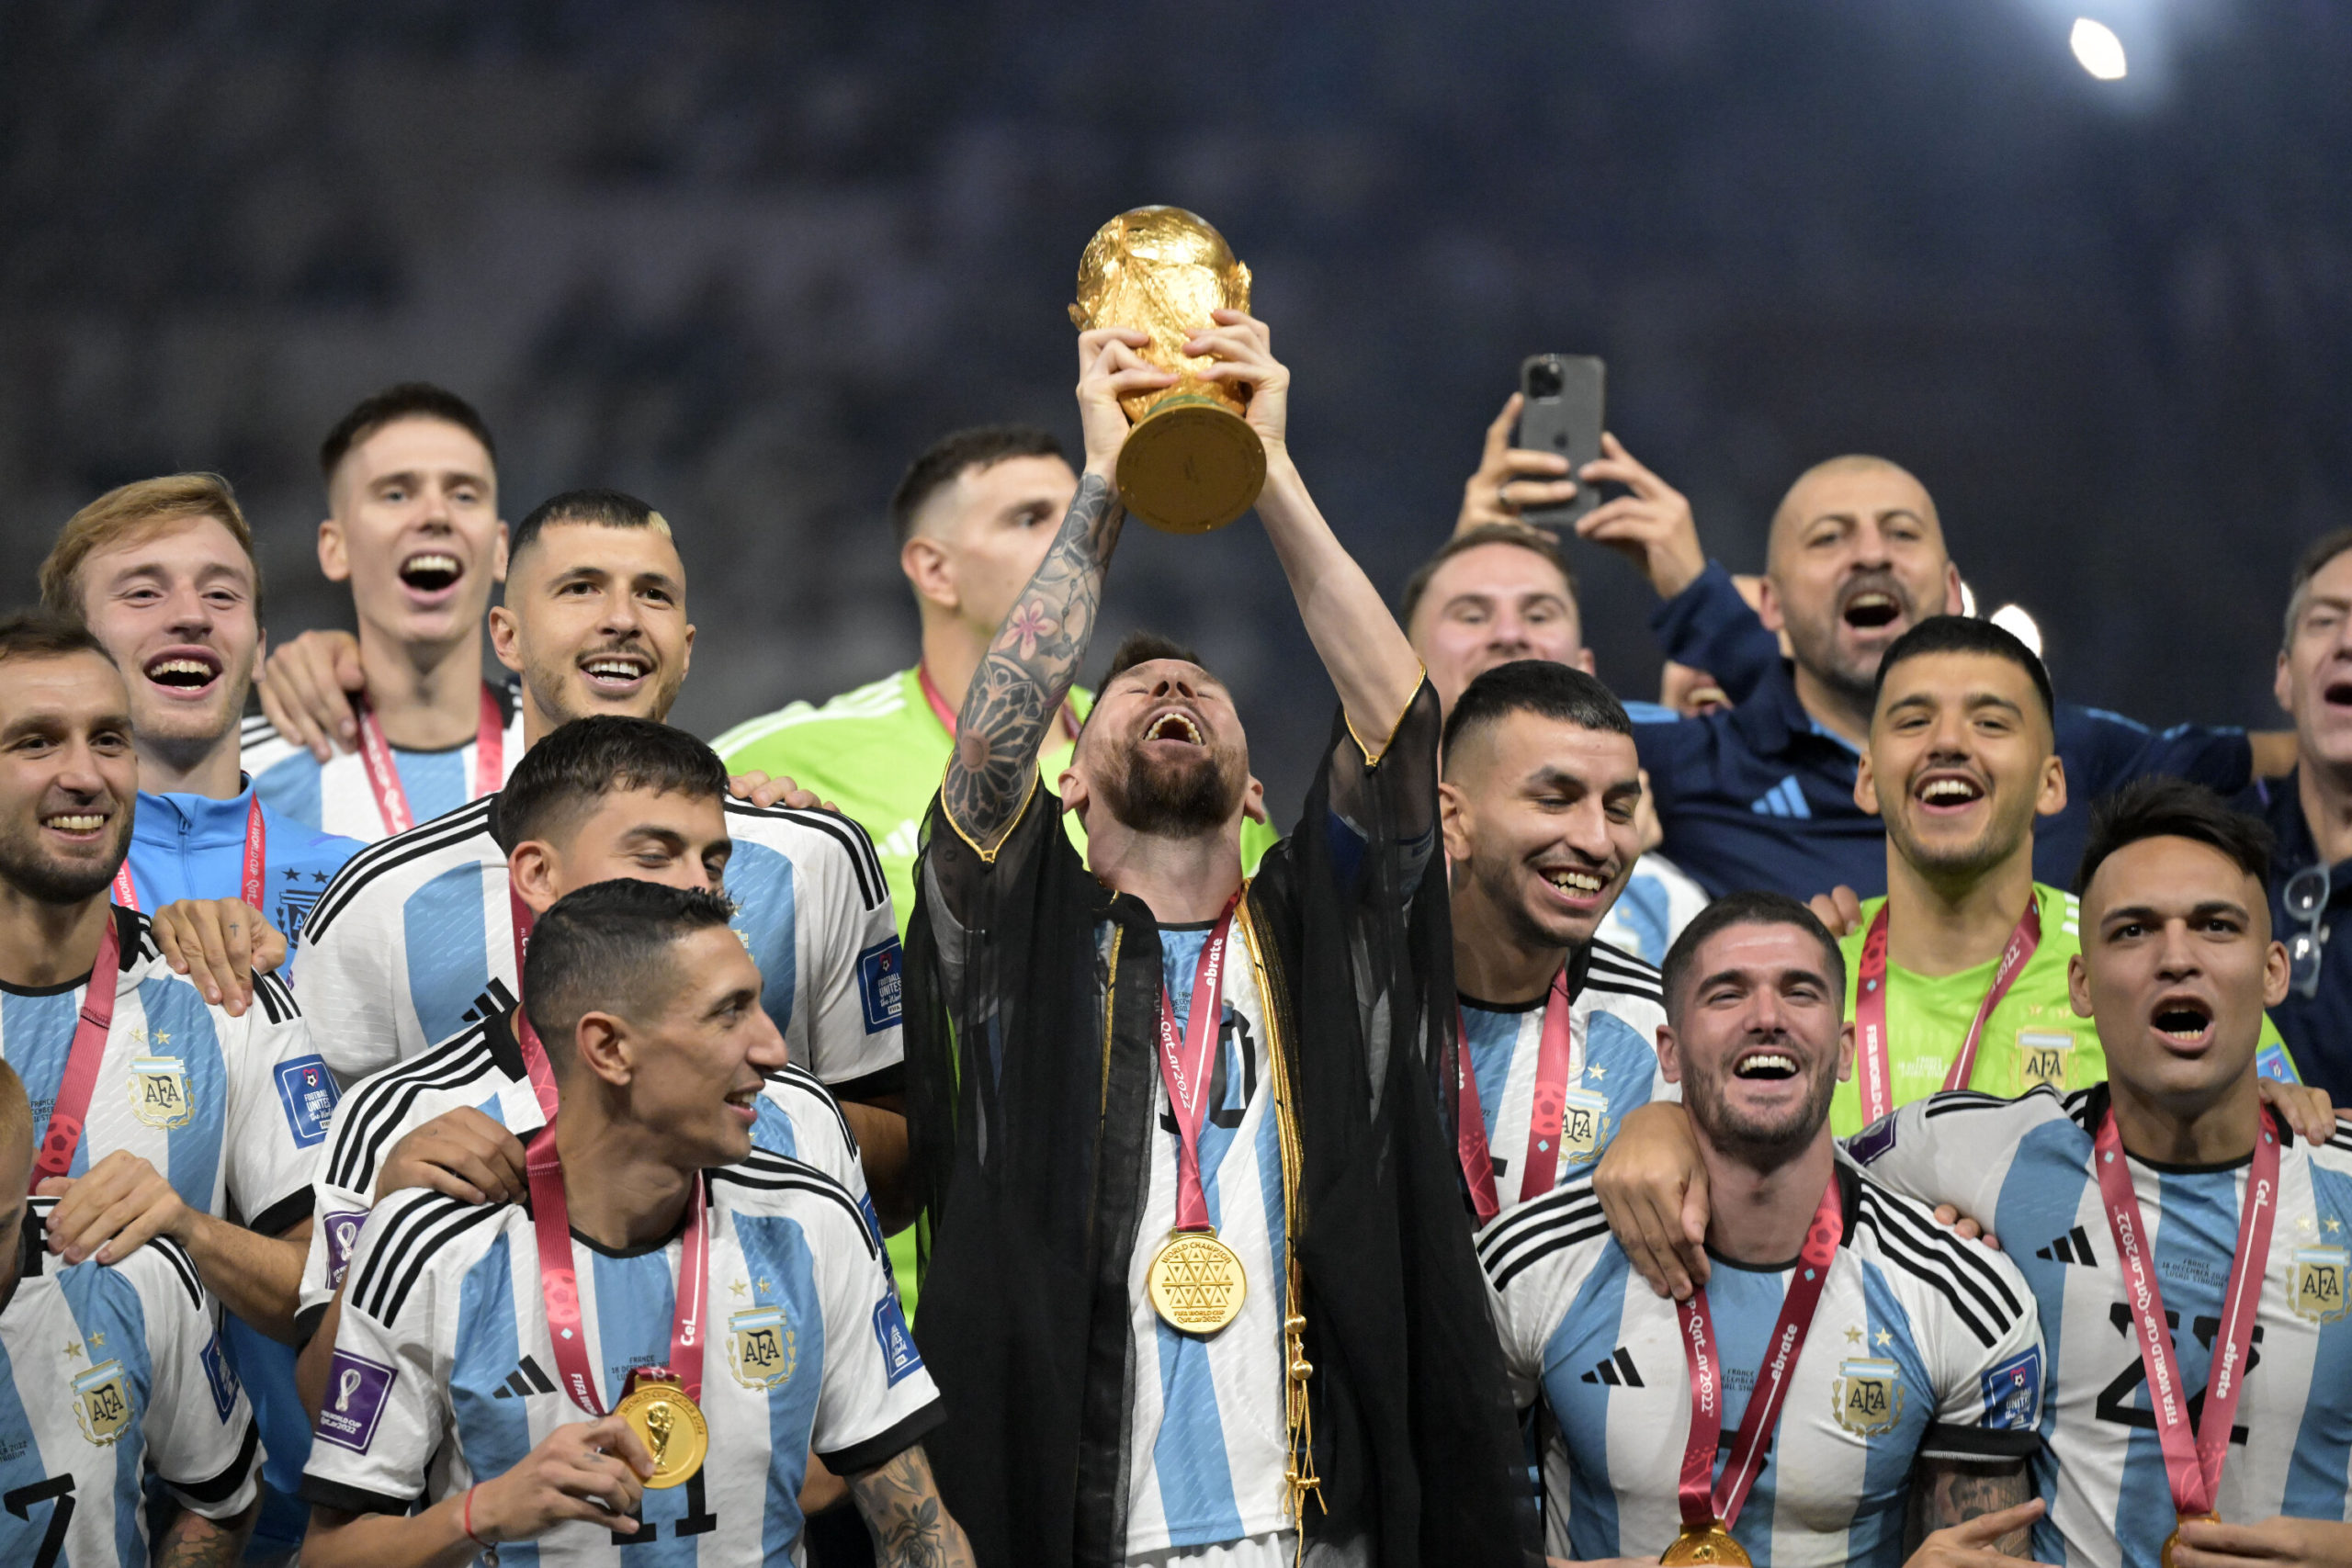 Quem está na final da Copa do Mundo 2022: Argentina e França